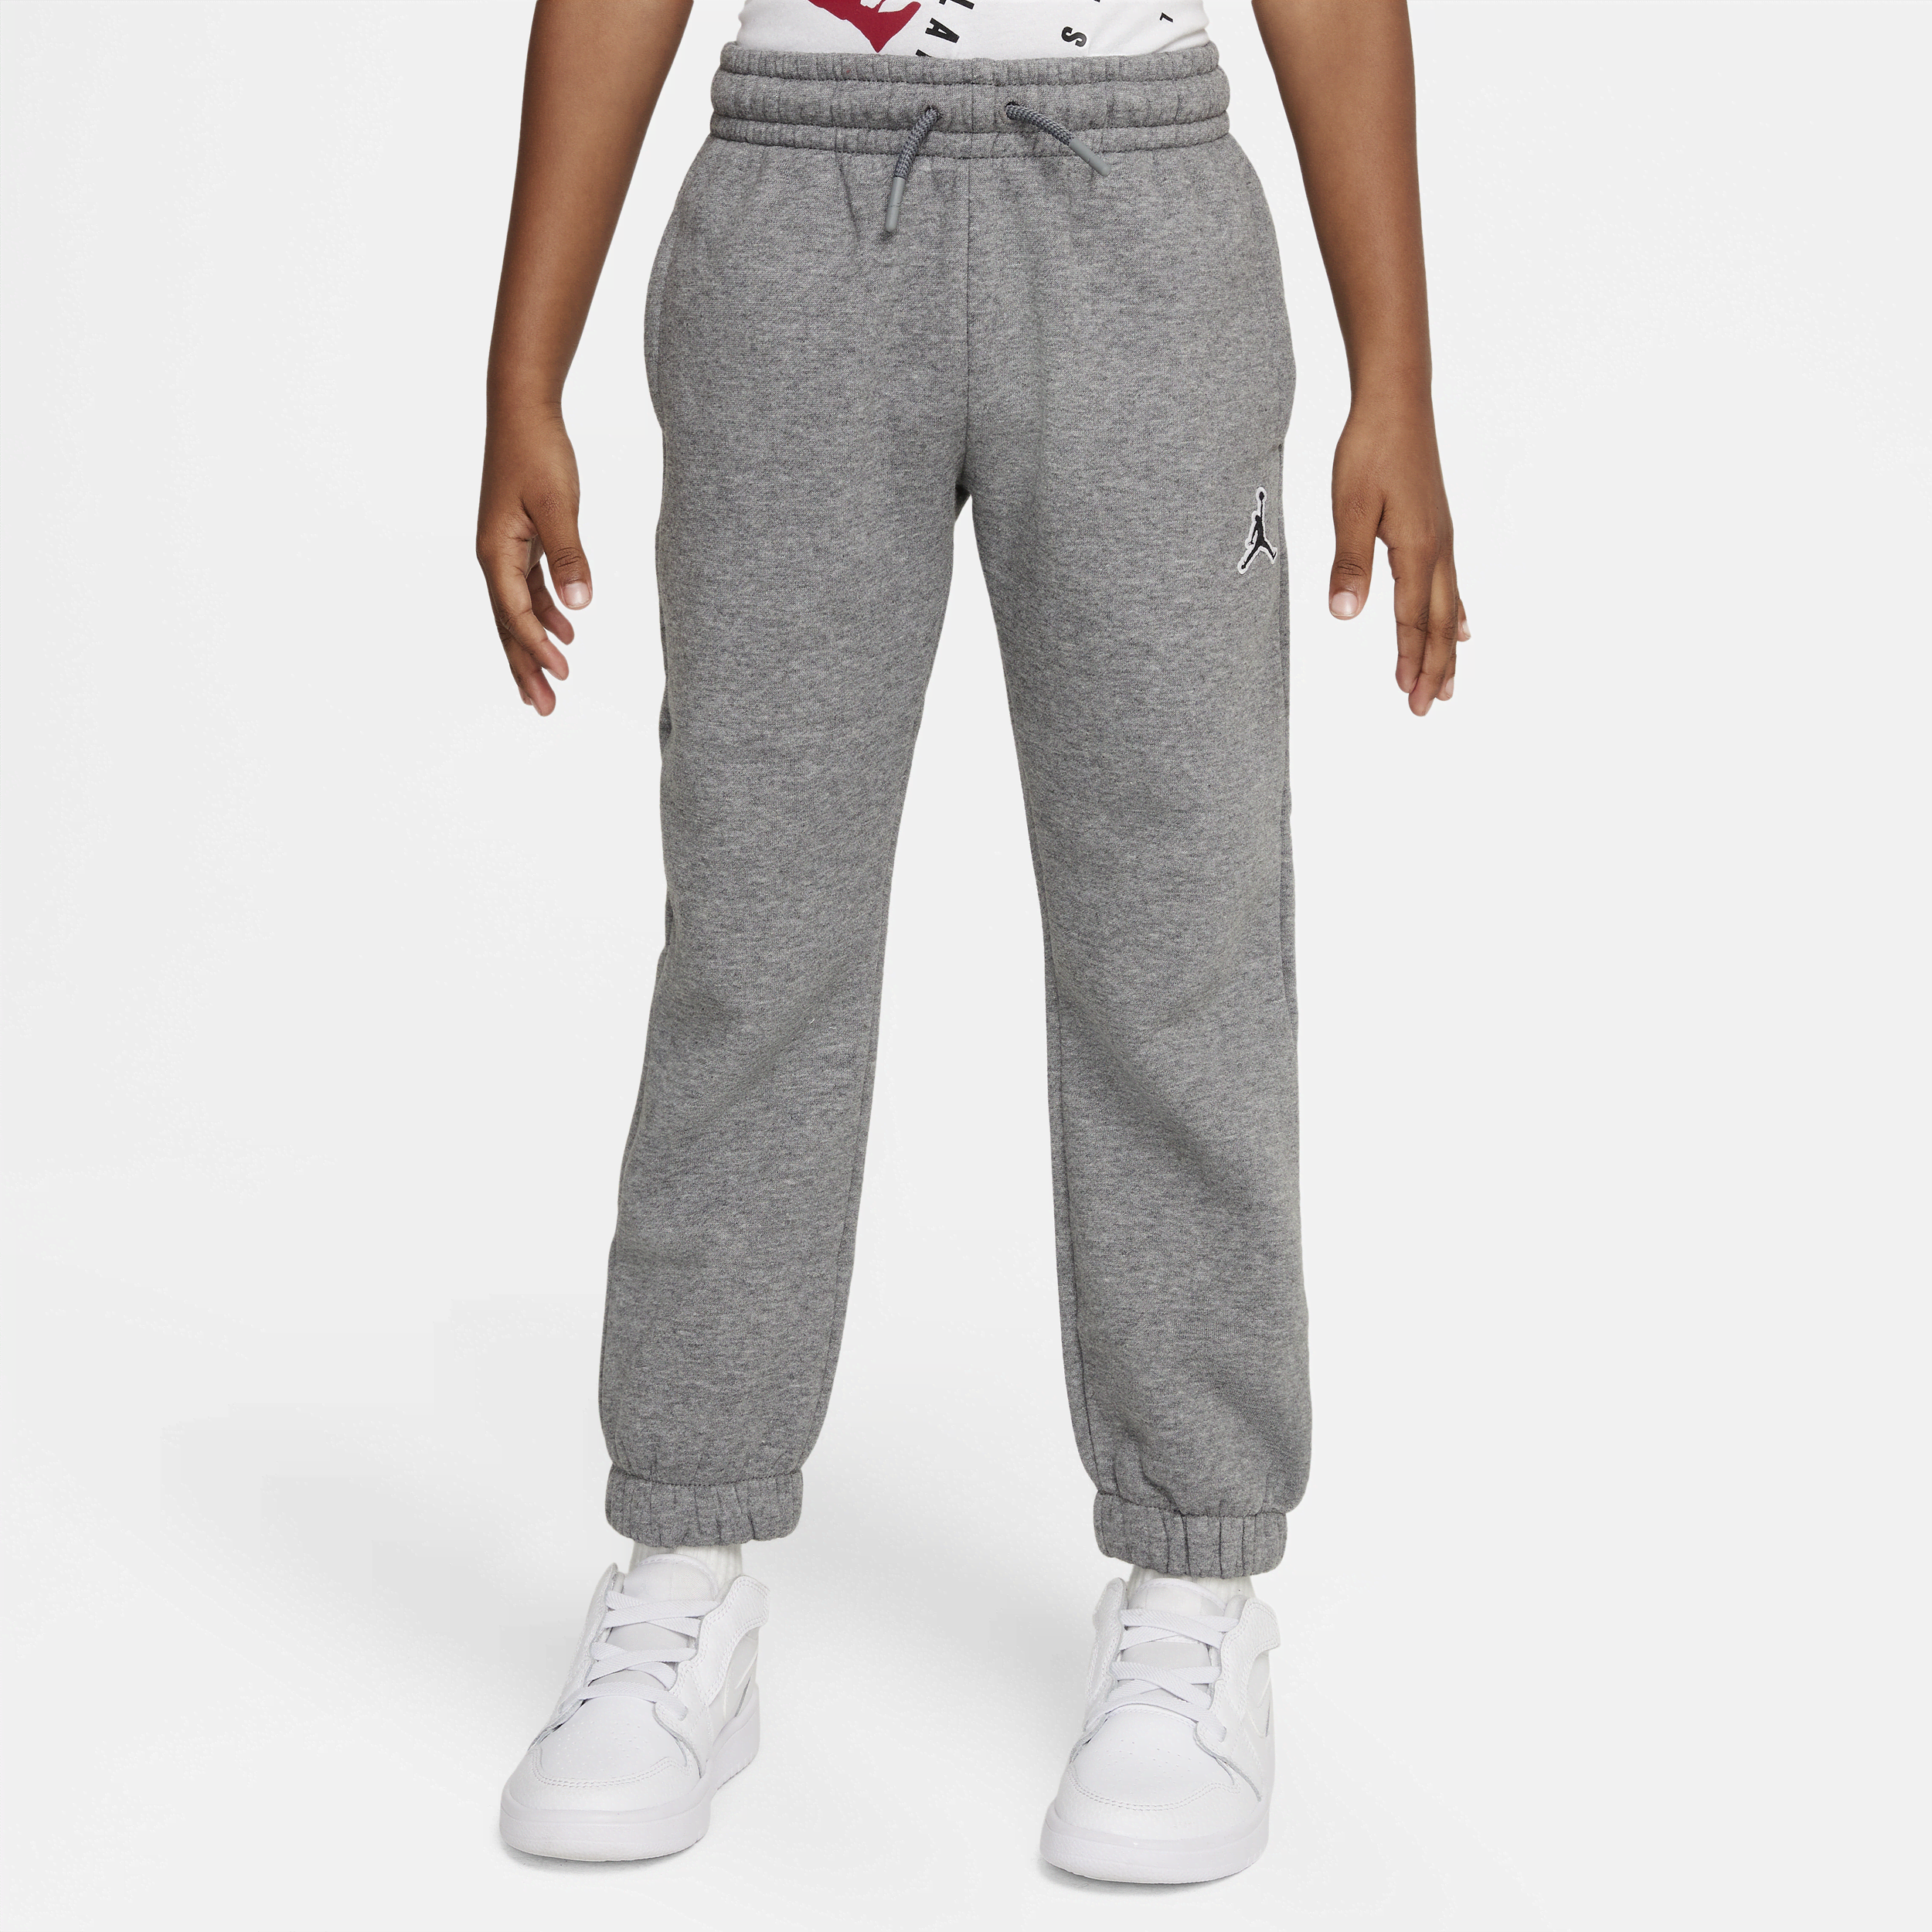 Jordan-bukser til mindre børn - grå